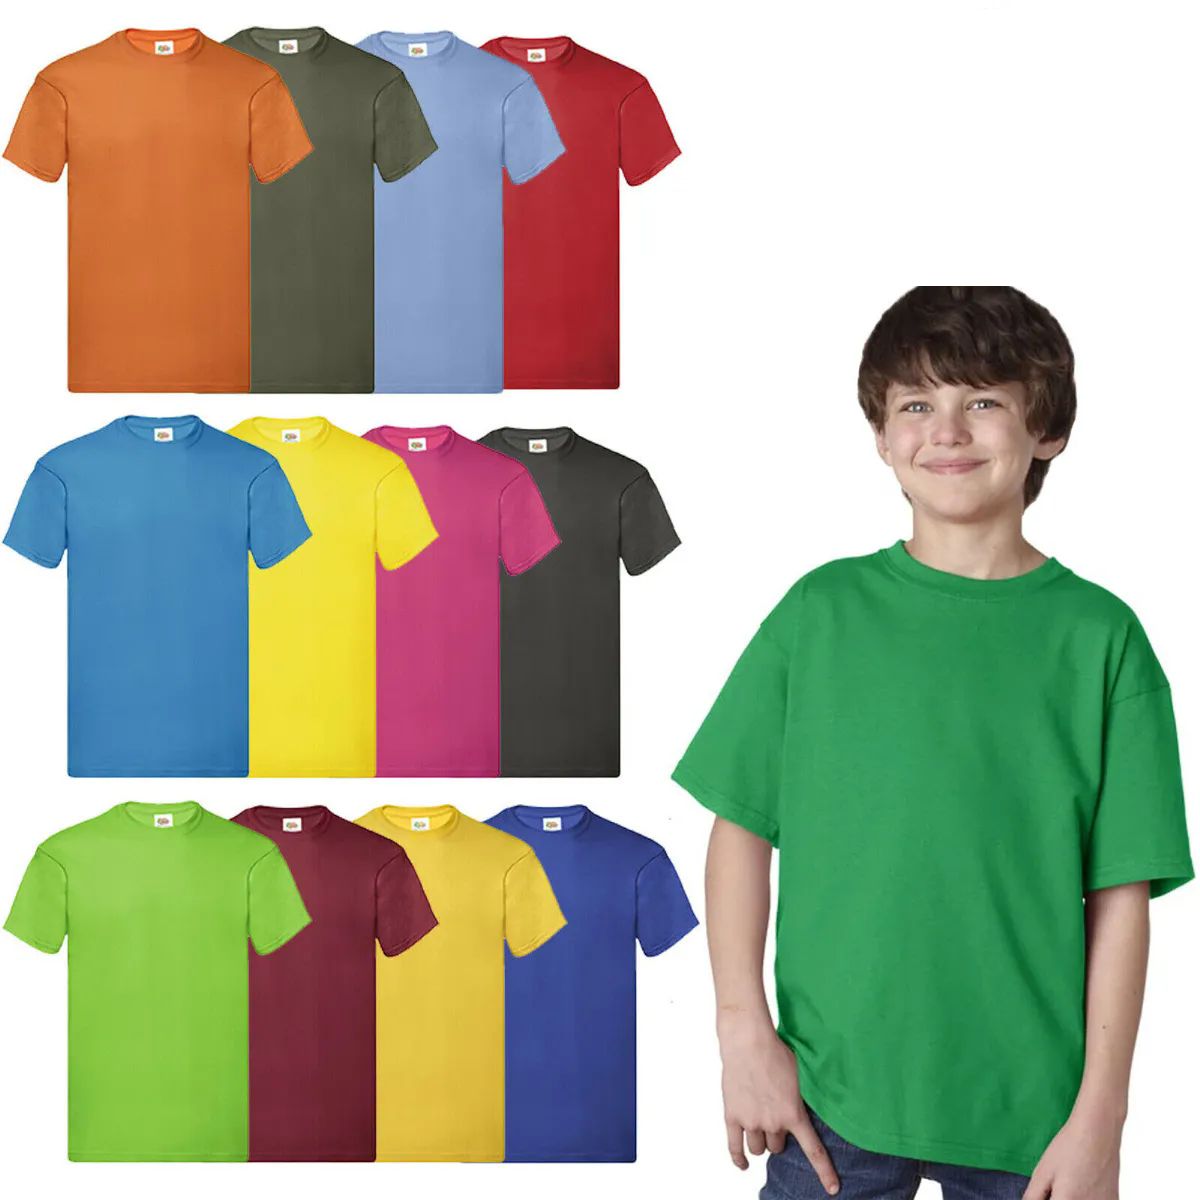 288 Bulk Billion Hats Kids Youth Cotton Assorted Colors T Shirts Size L